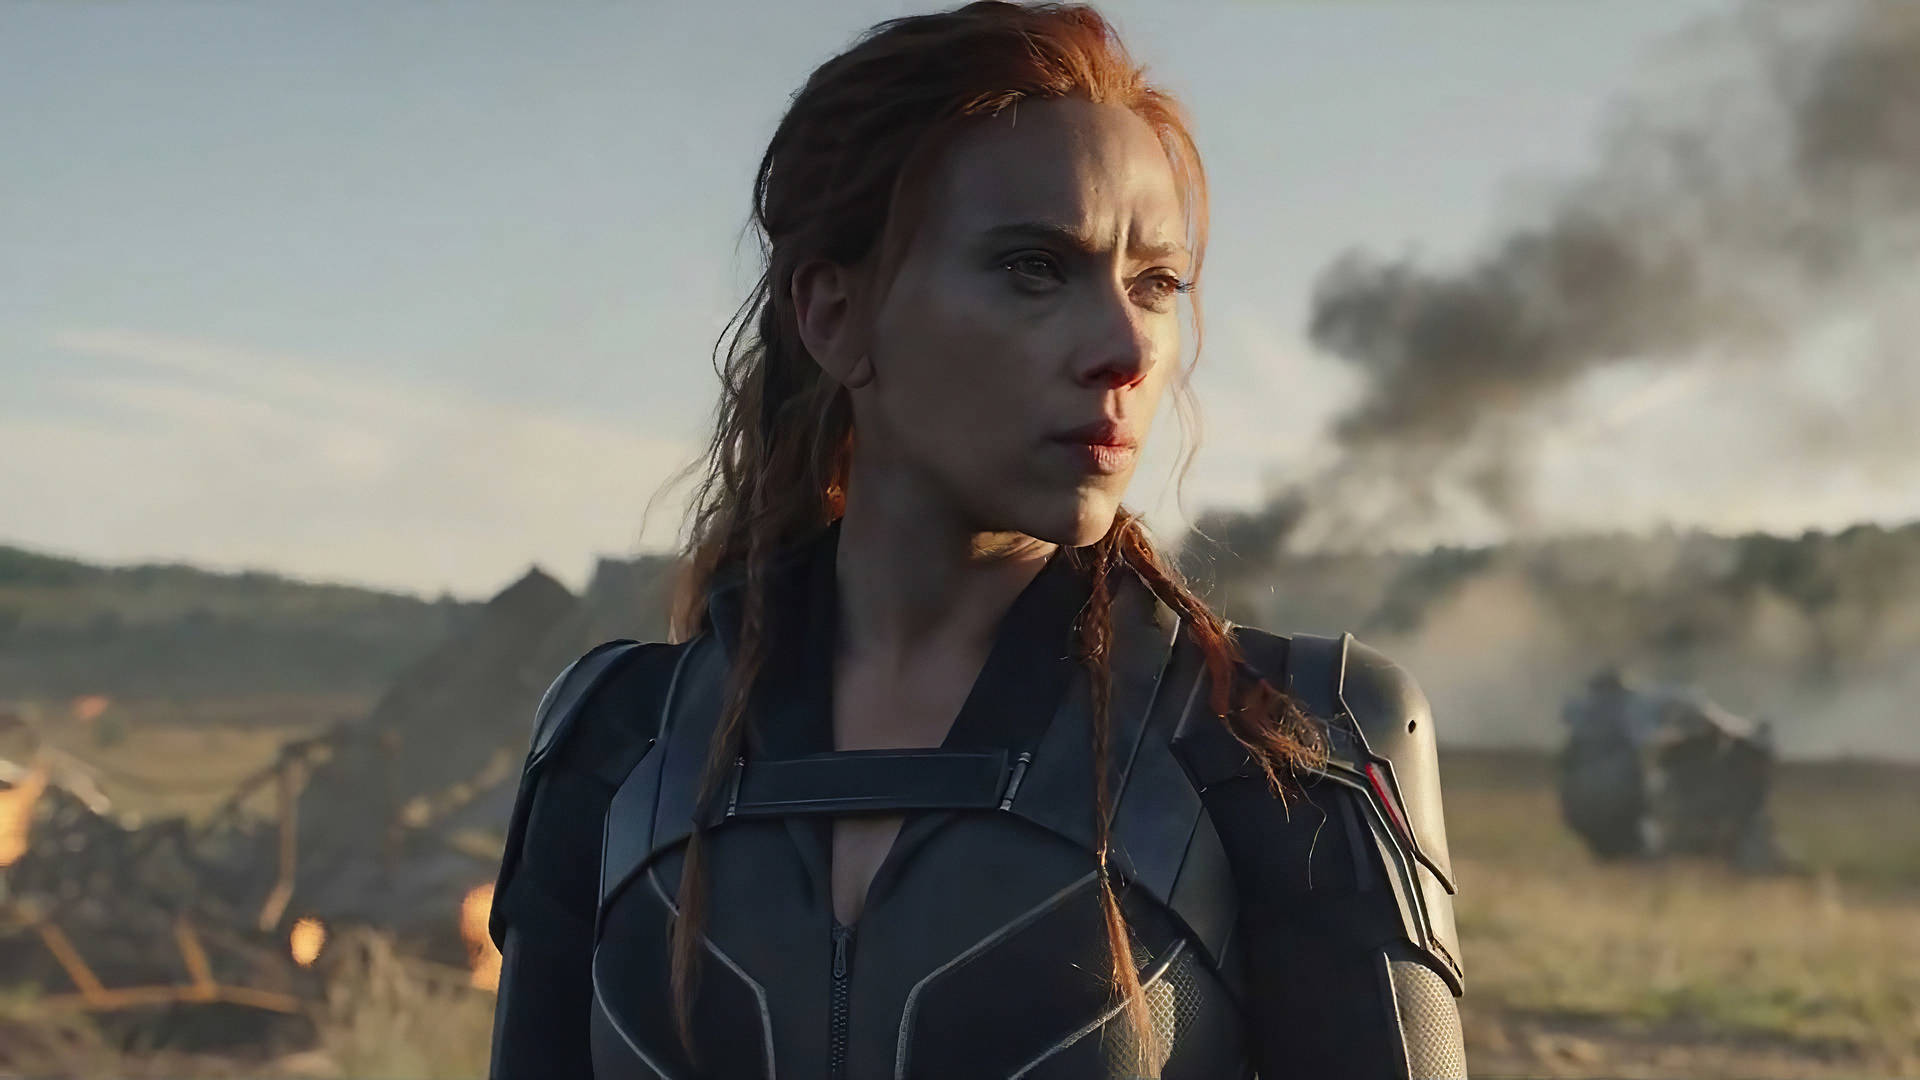 Scarlett Johansson as Marvel's Black Widow Wallpaper